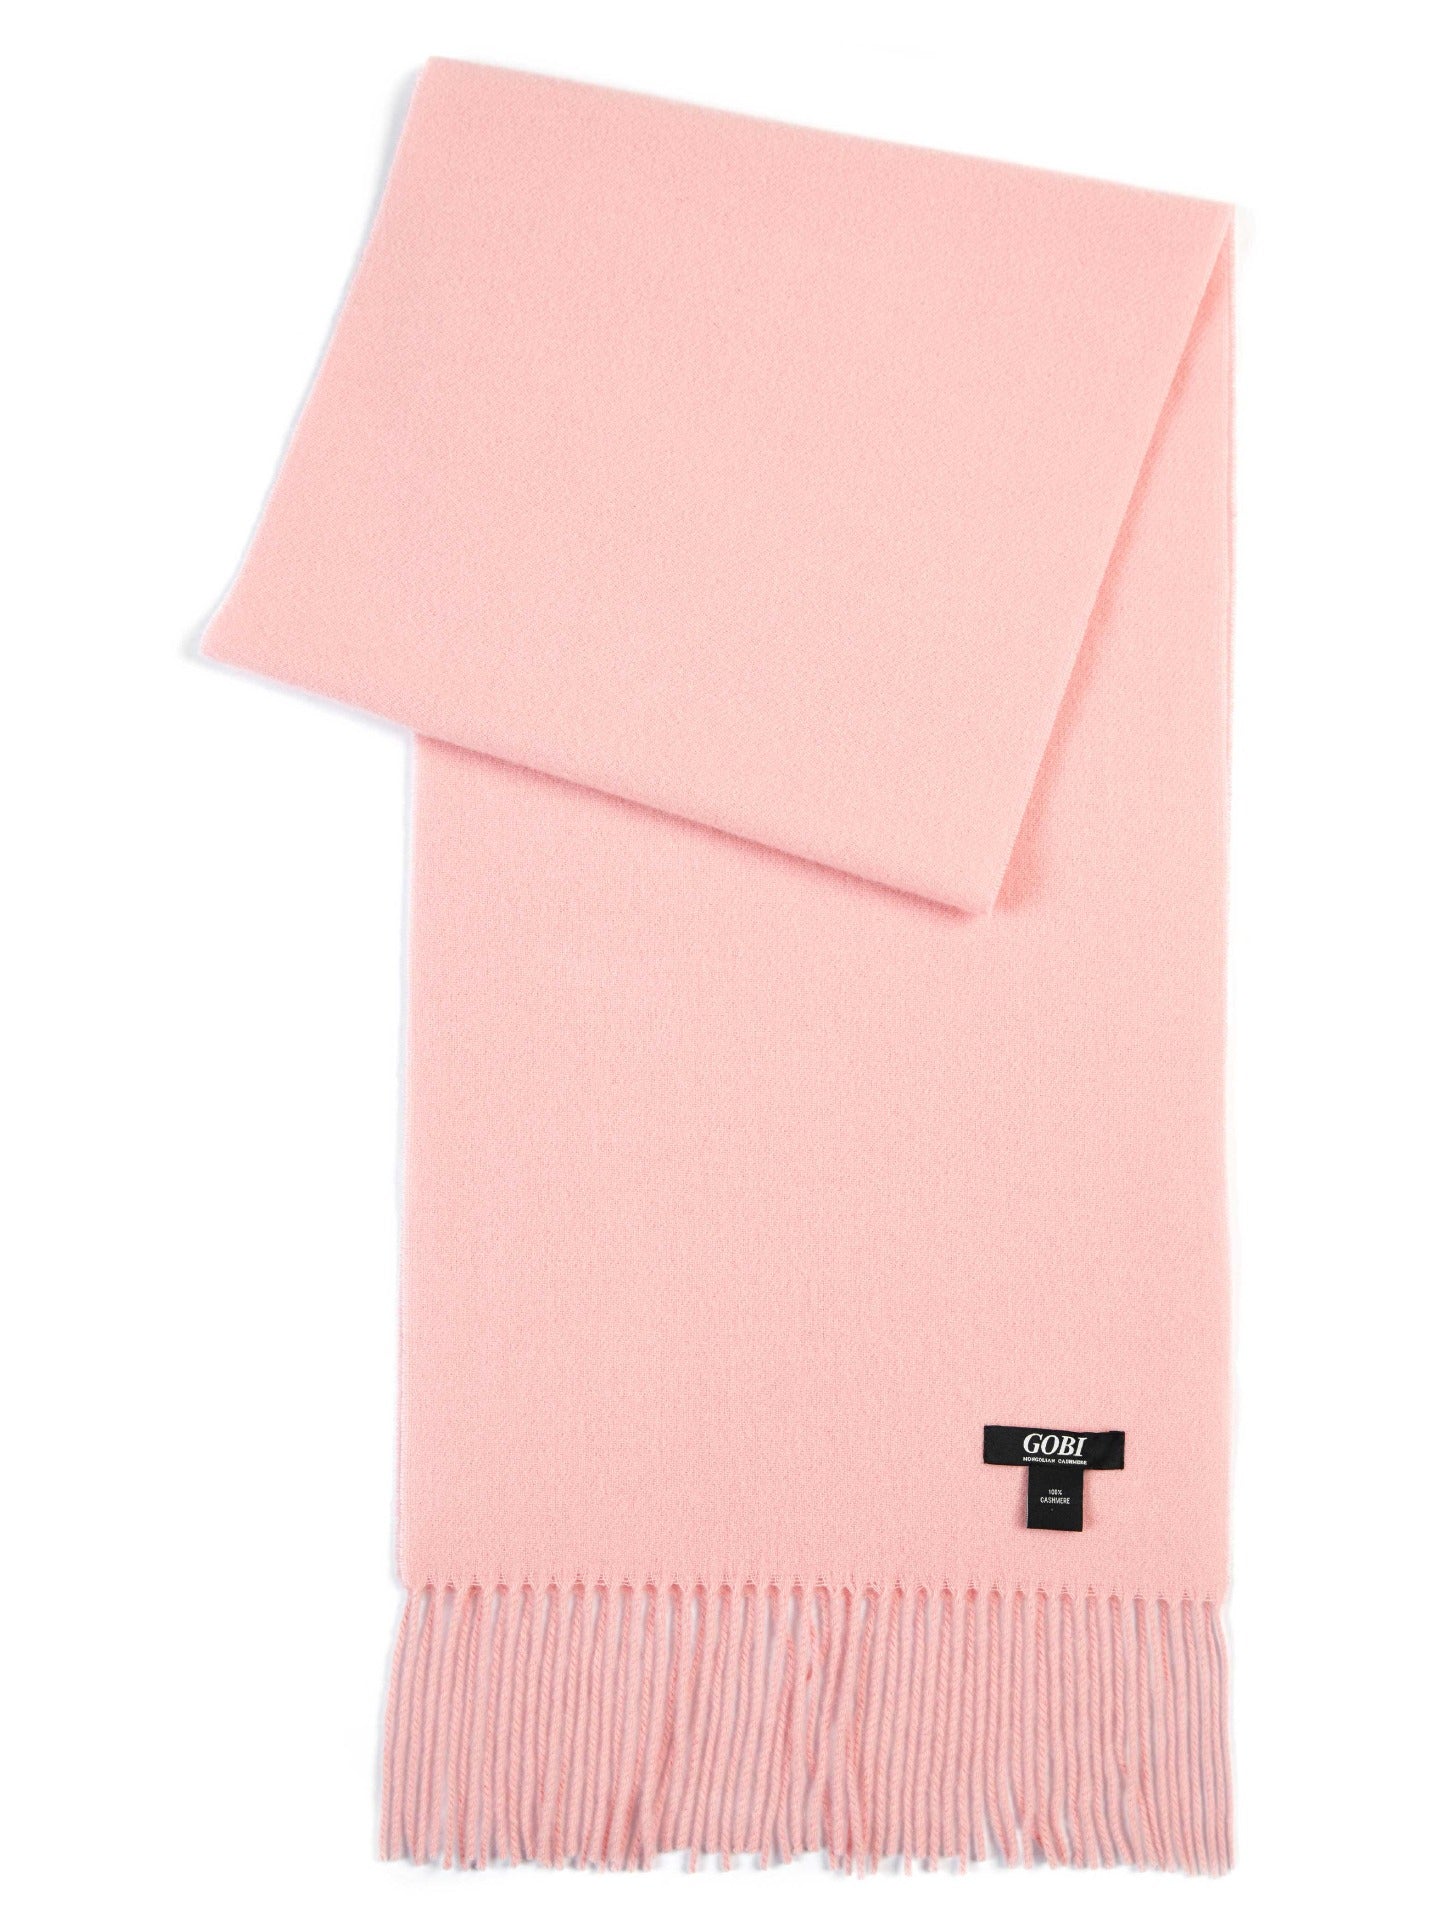 Unisex Cashmere Fringed Scarf Powder Pink - Gobi Cashmere